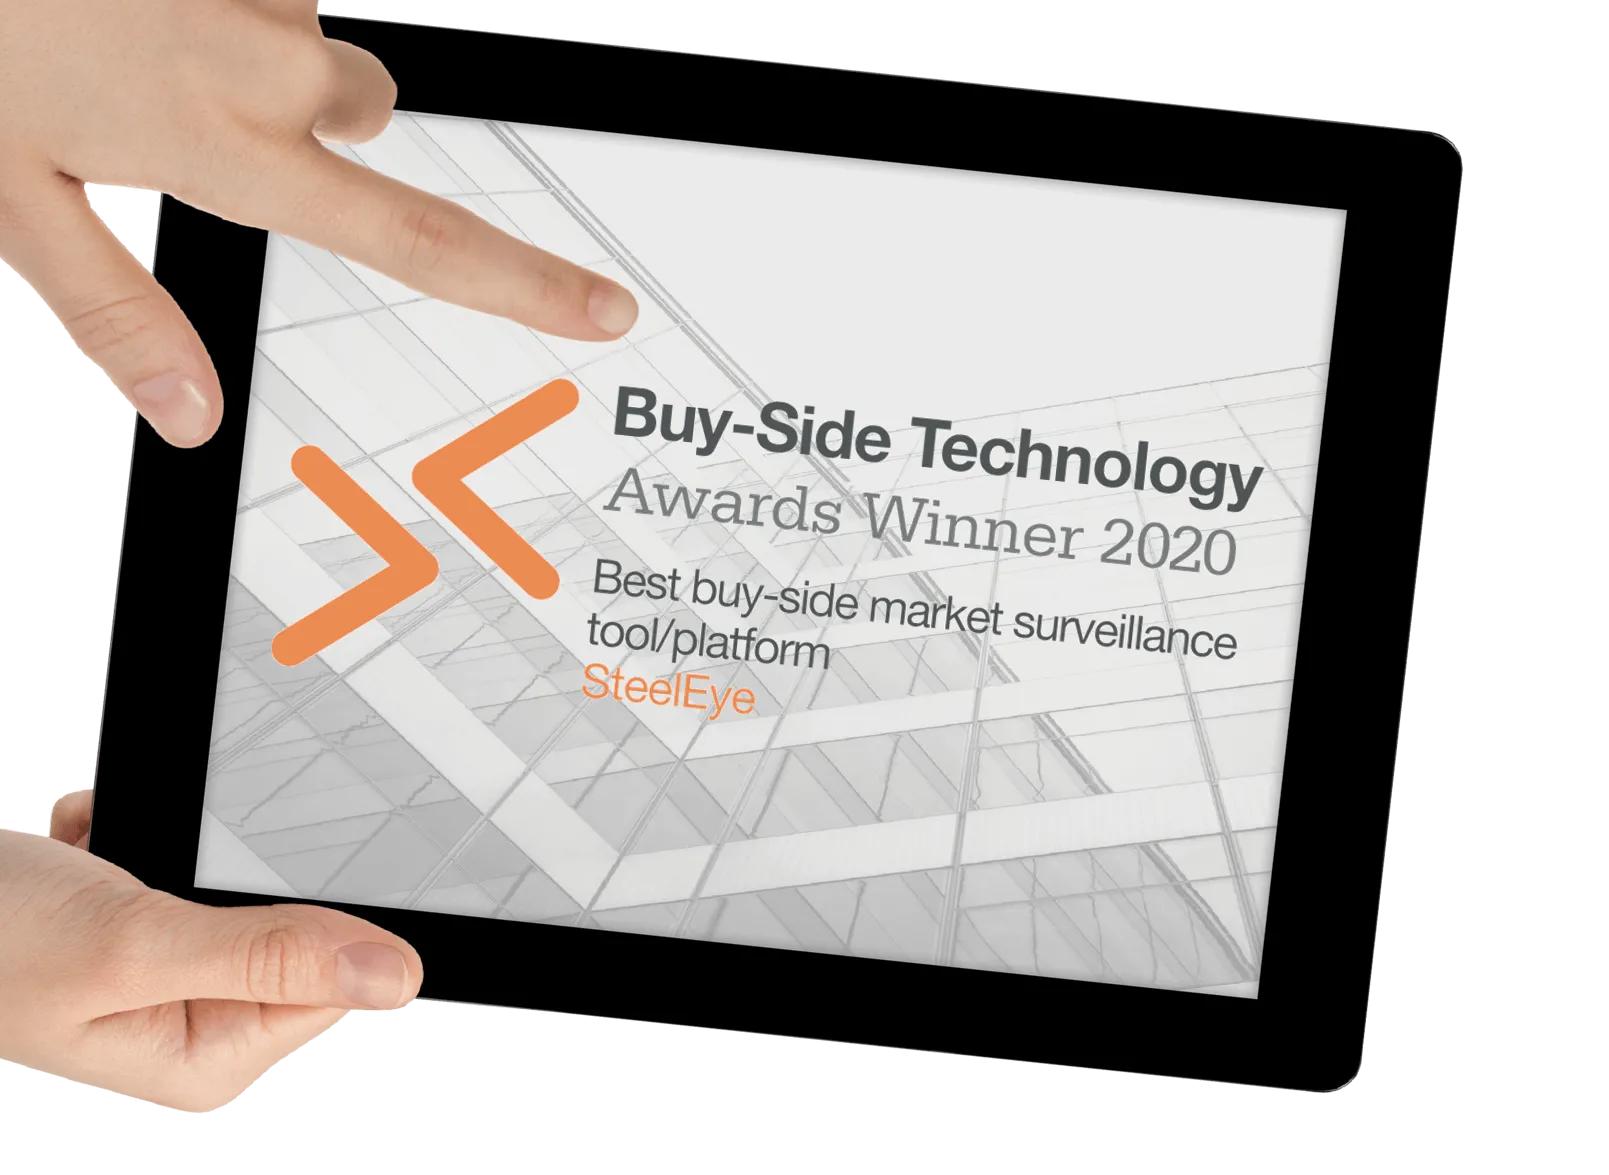 Buy-side technology awards winner 2020-